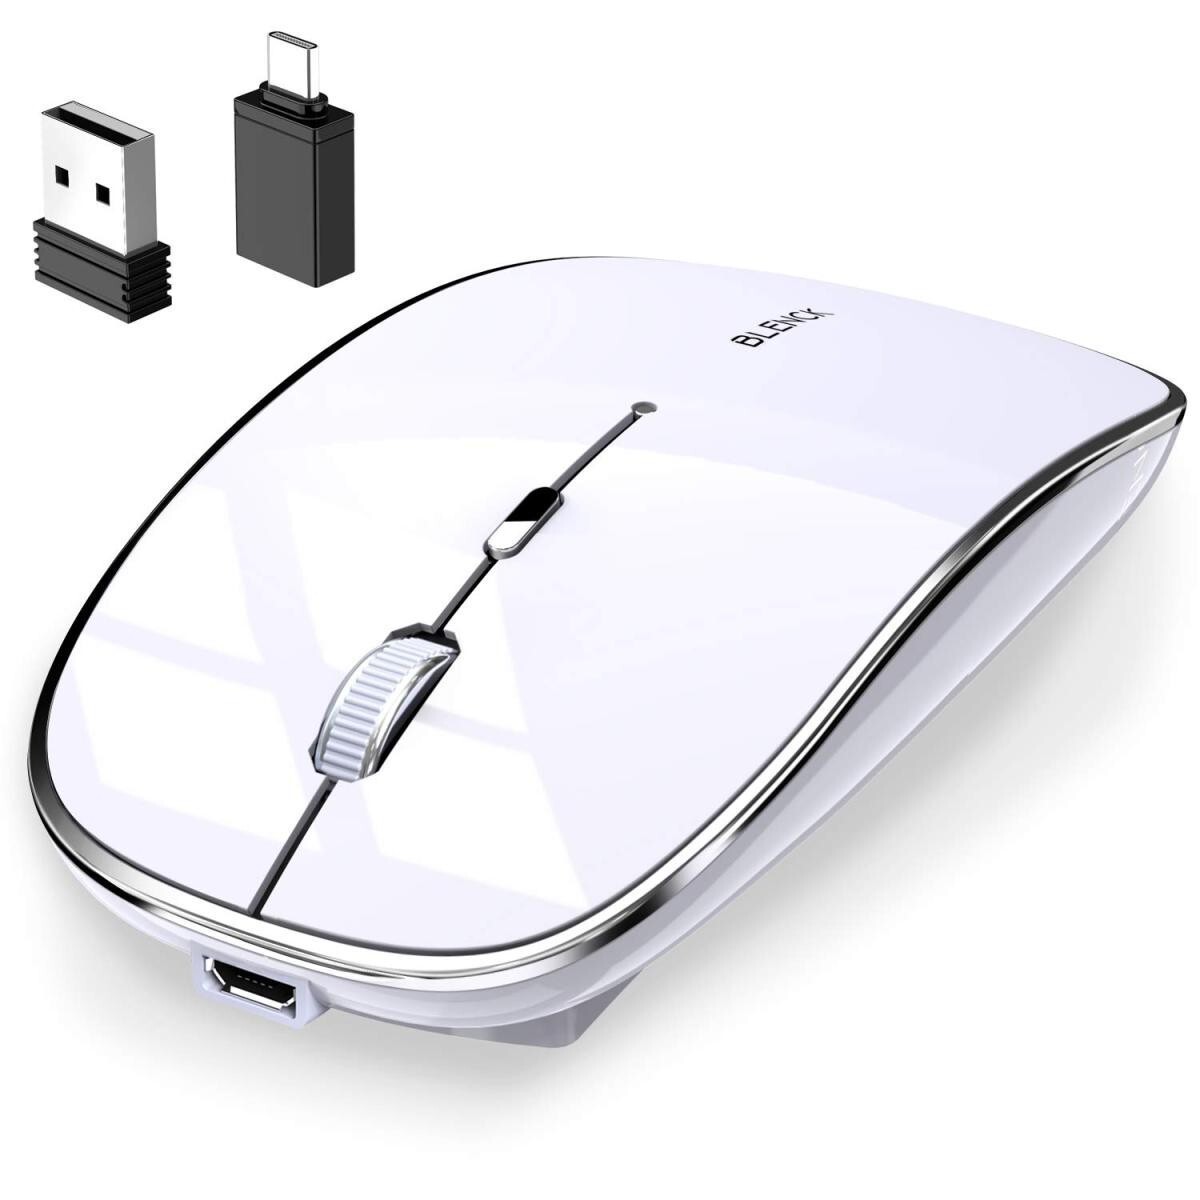 マウス 完全ワイヤレス機能 ワイヤレスマウス Bluetoothマウス Bluetooth5.1 光学式 高感度 3DPIモード Mac Windowsなど対応 ブルートゥース